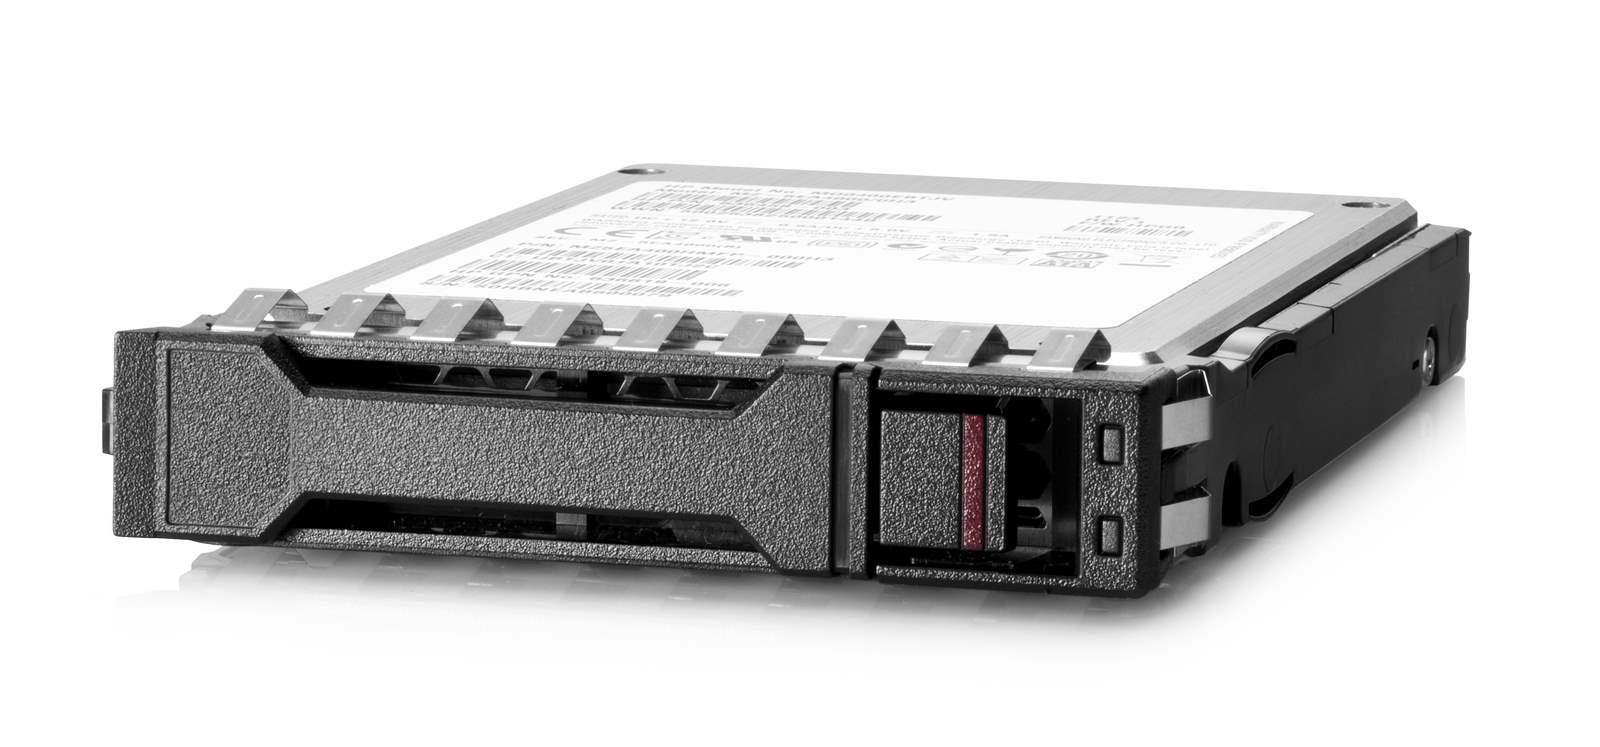 Bazar - HPE 1.92TB SAS 12G Read Intensive SFF BC Value SAS Multi Vendor SSD - náhradní obal,  nepoužito0 